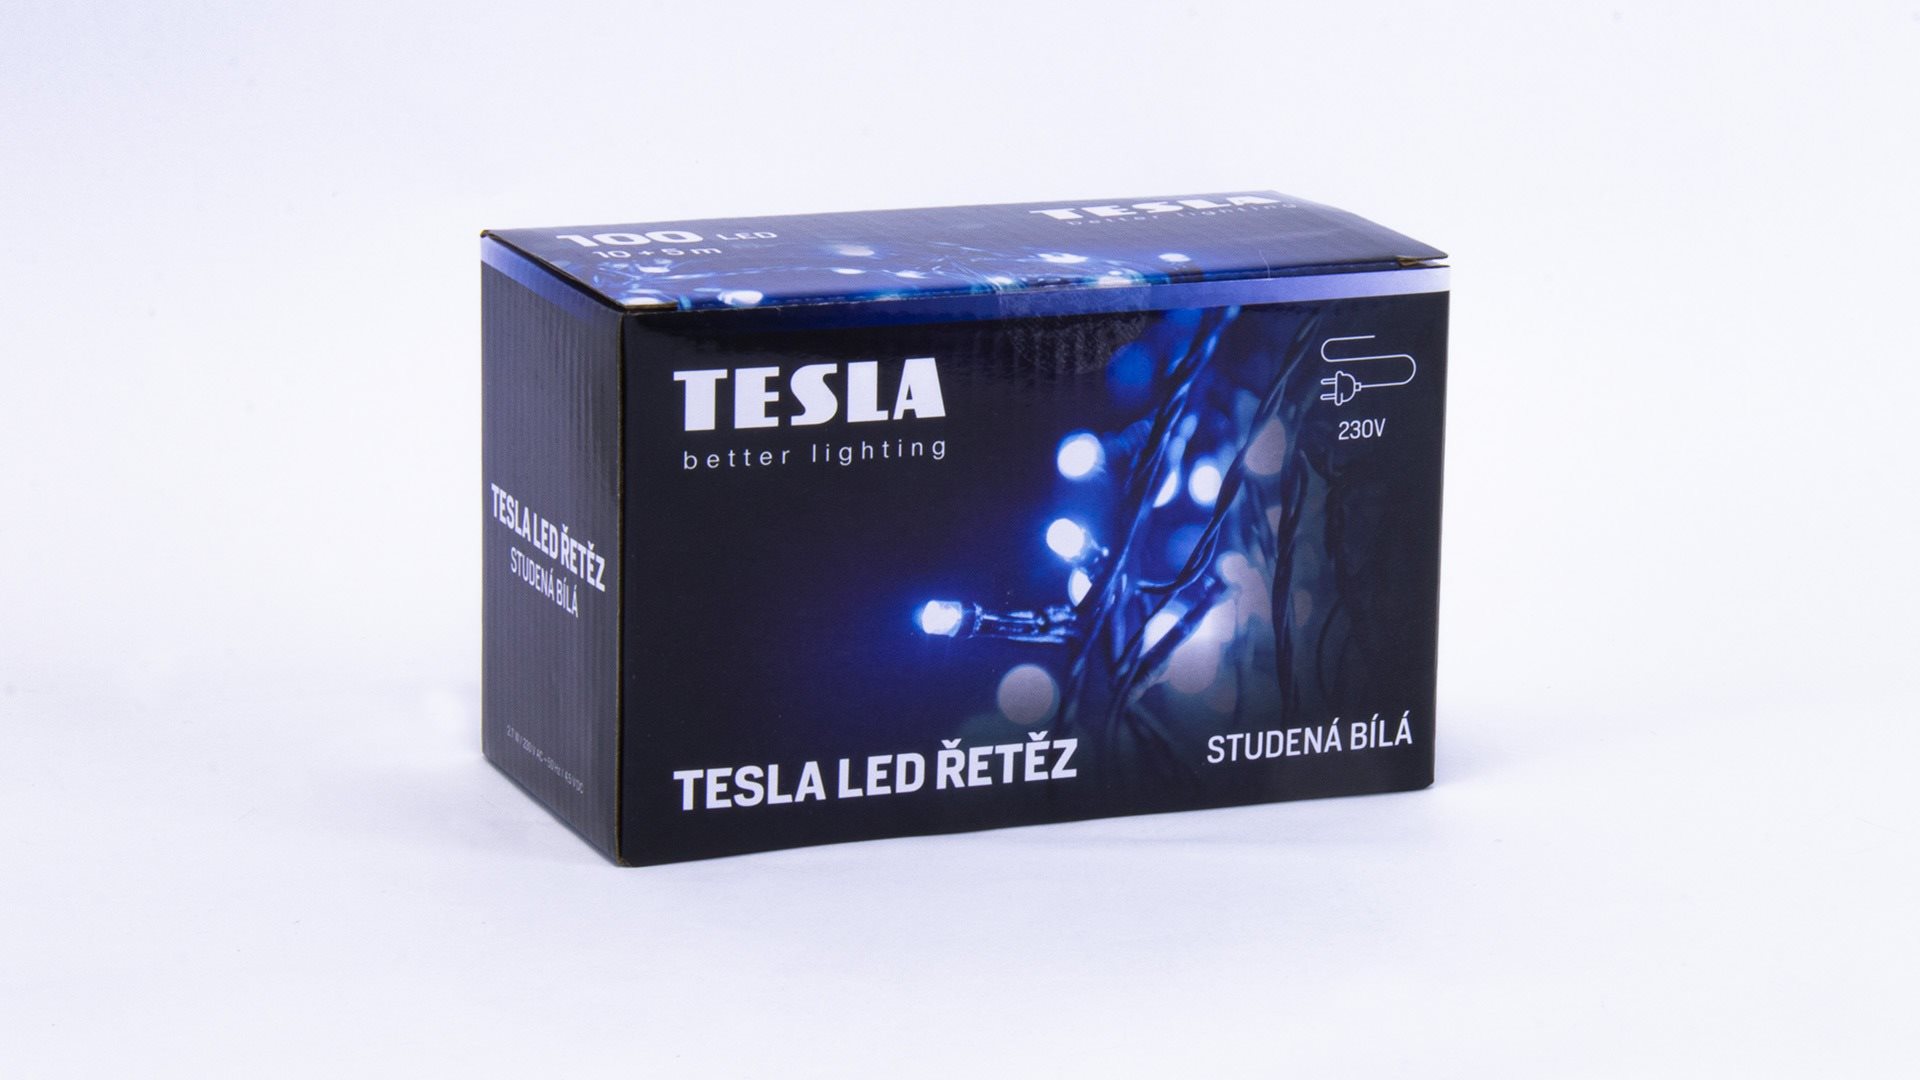 Lichterkette Tesla - Dekorative Lichterkette - kaltweiß - 6500K - 100 LED - 10 m + 5 m Kabel - 230 Volt - Fernbedienung mit 8 Funktionen - IP 44 ...